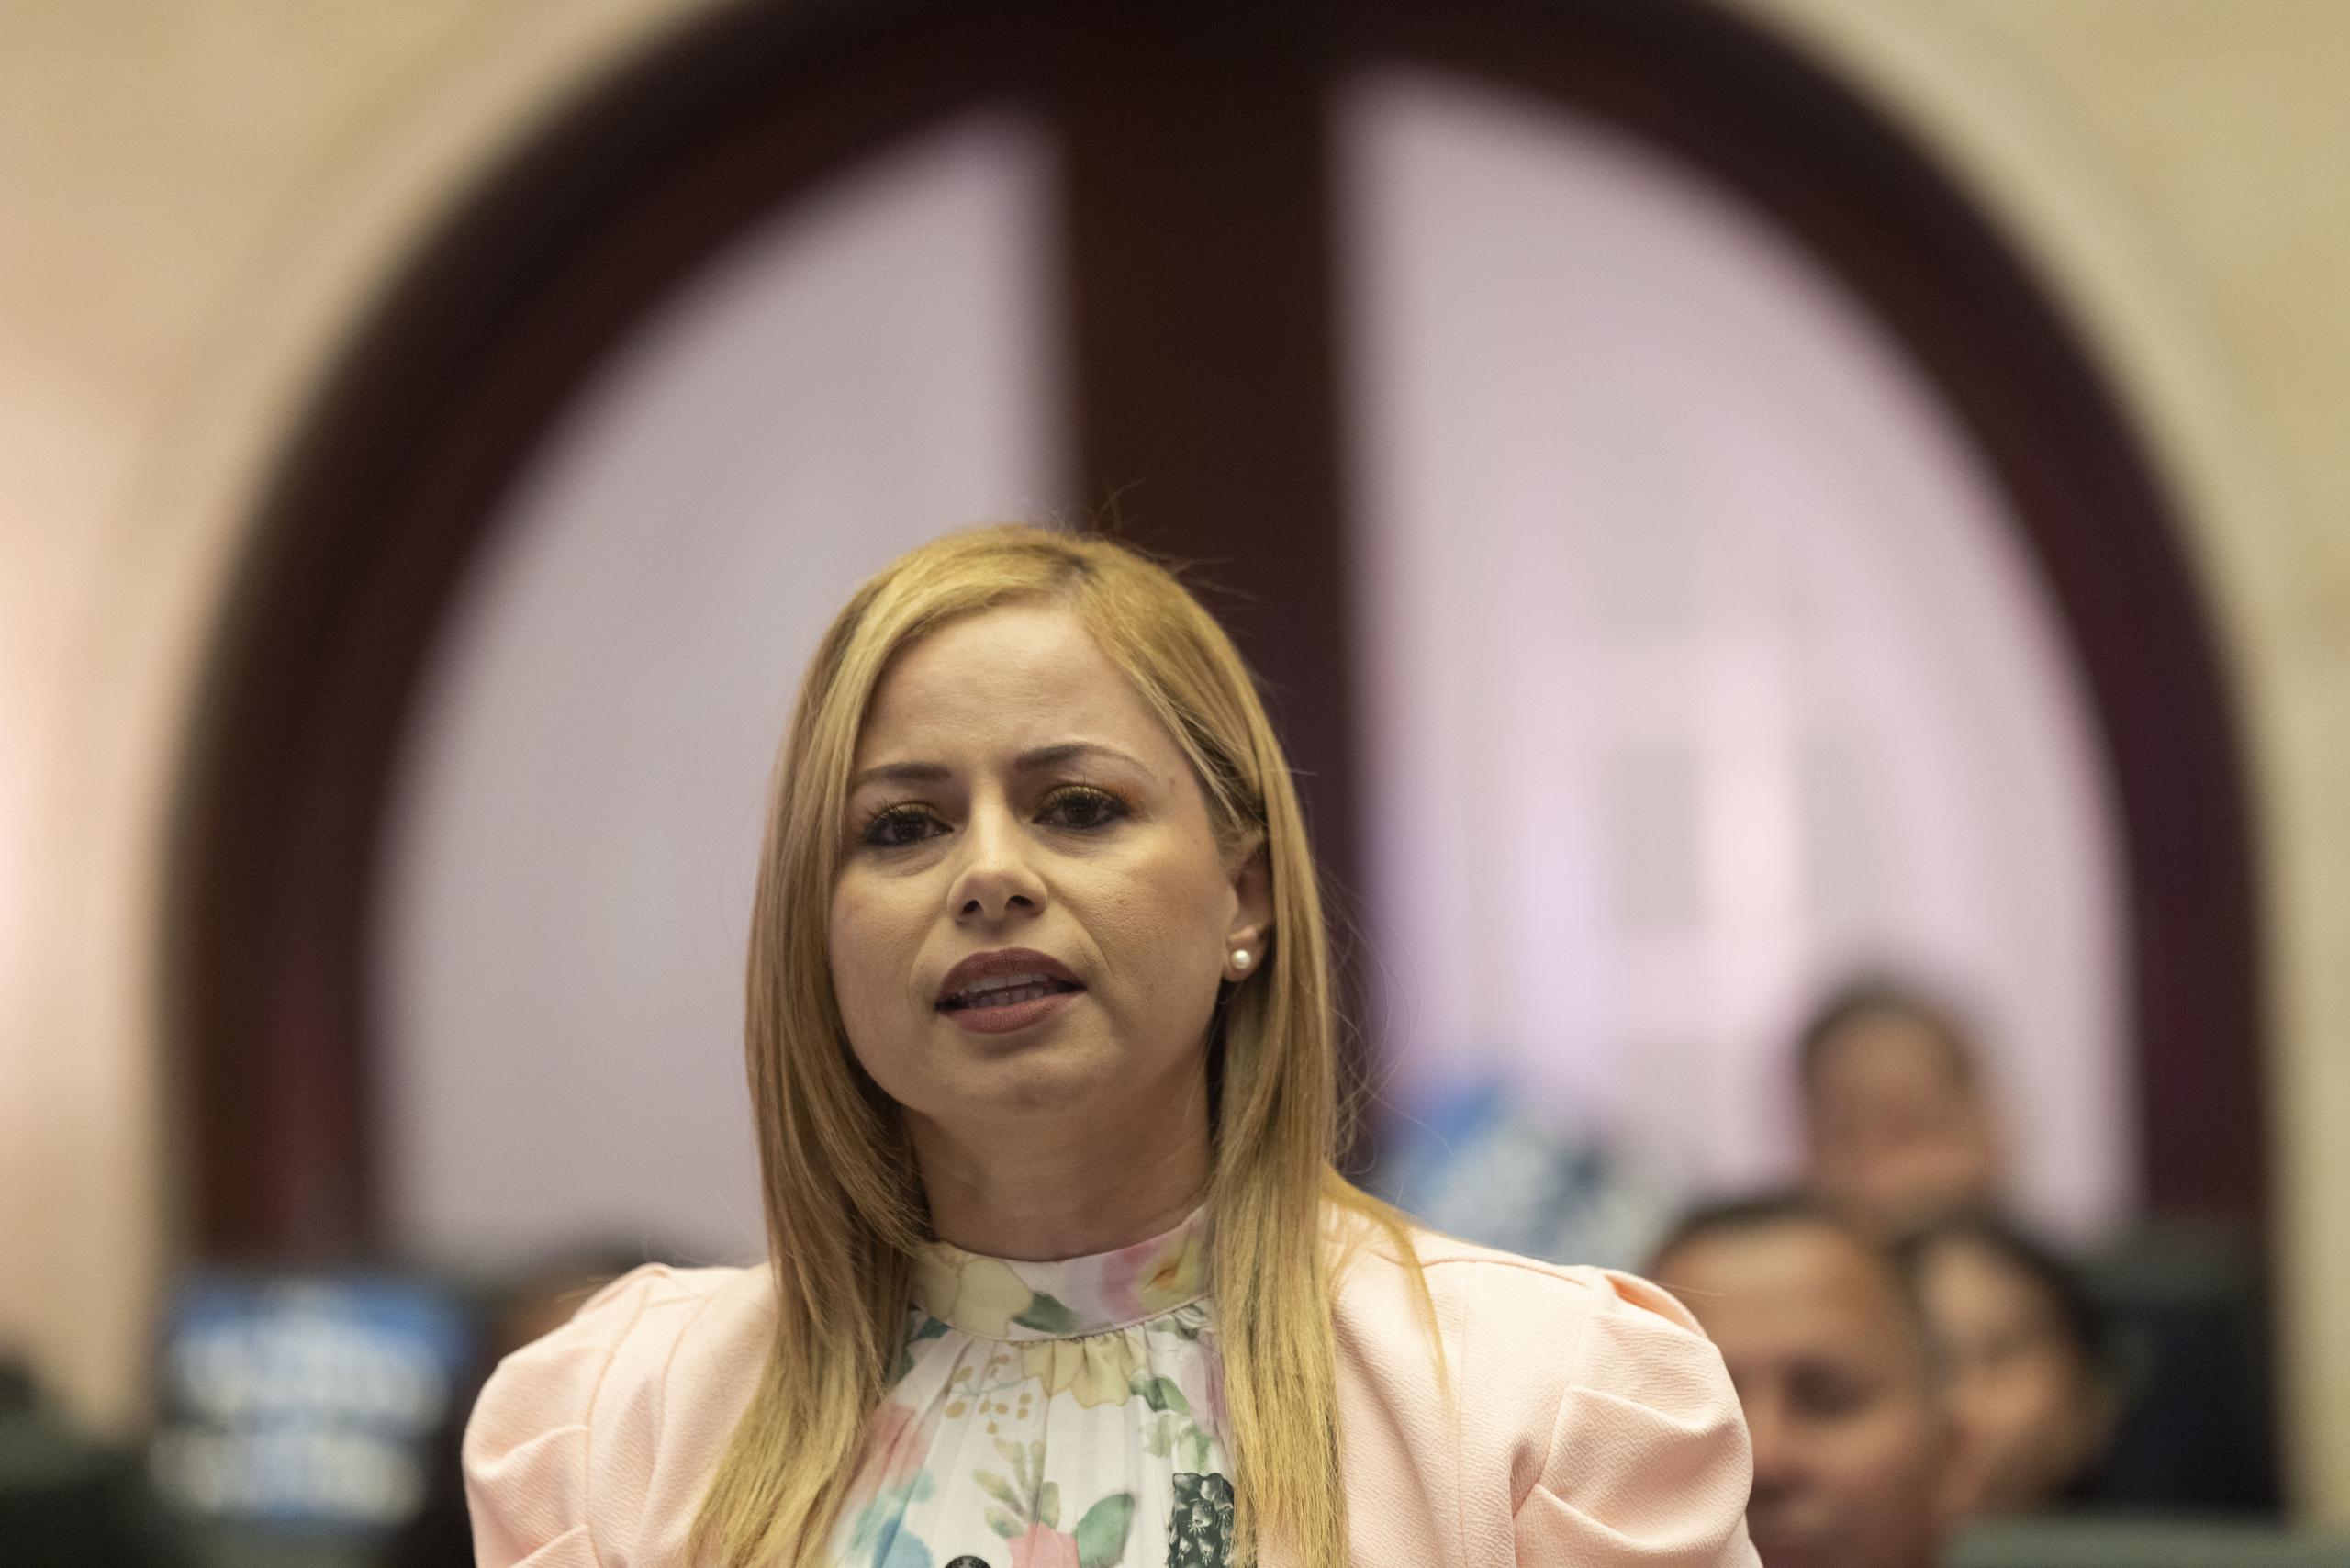 Jocelyne Rodríguez Negrón preside actualmente la Comisión de Asuntos de la Mujer de la Cámara de Representantes.